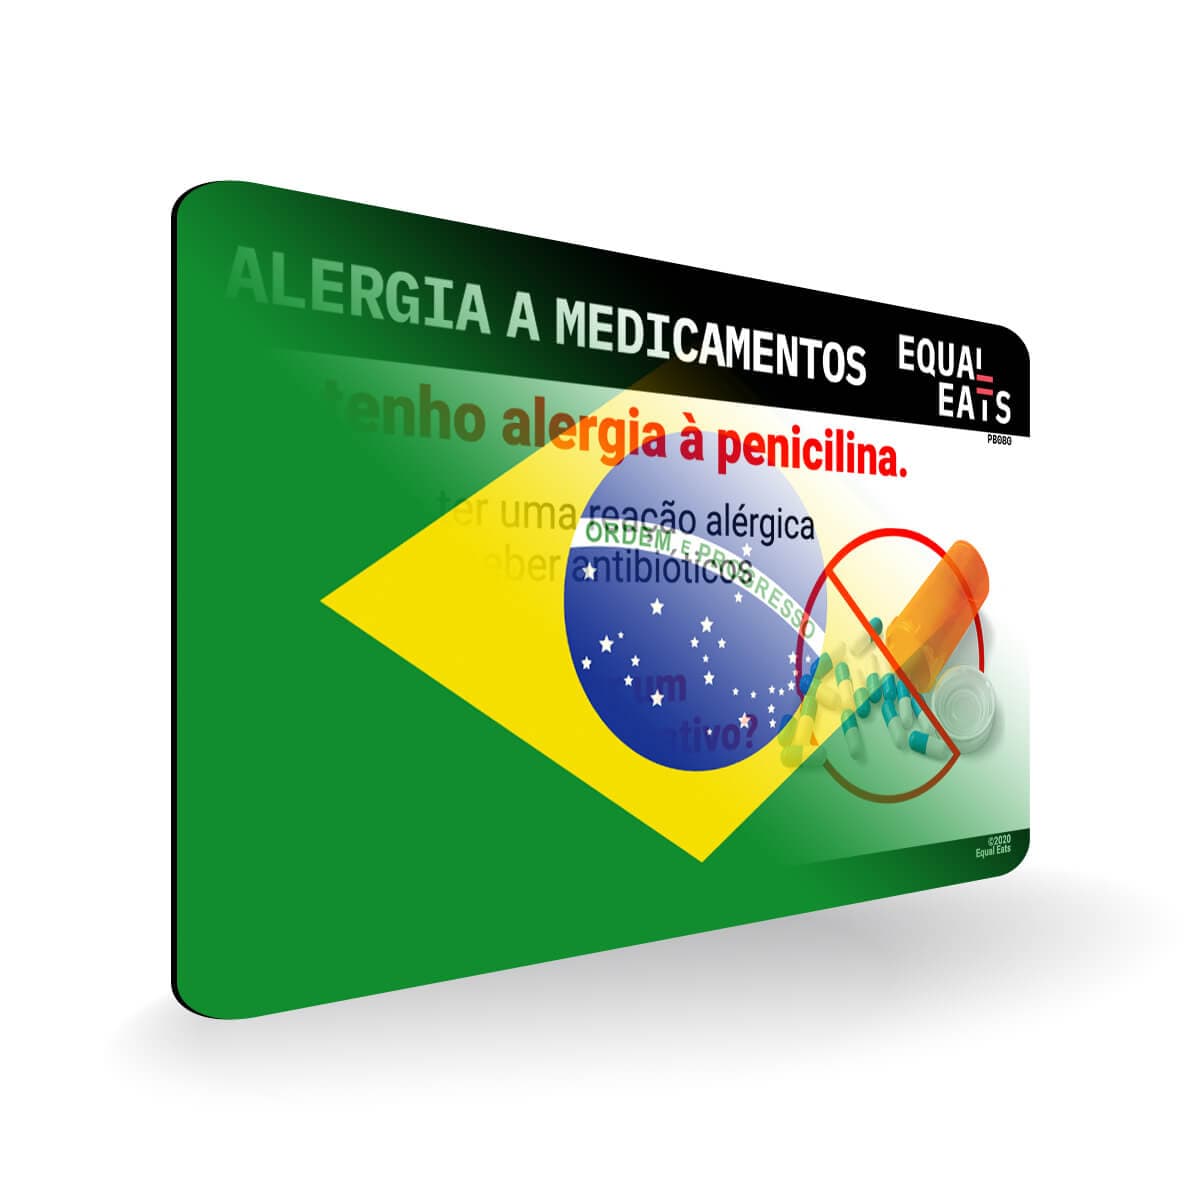 Penicillin Allergy in Portuguese. Penicillin medical ID Card for Brazil